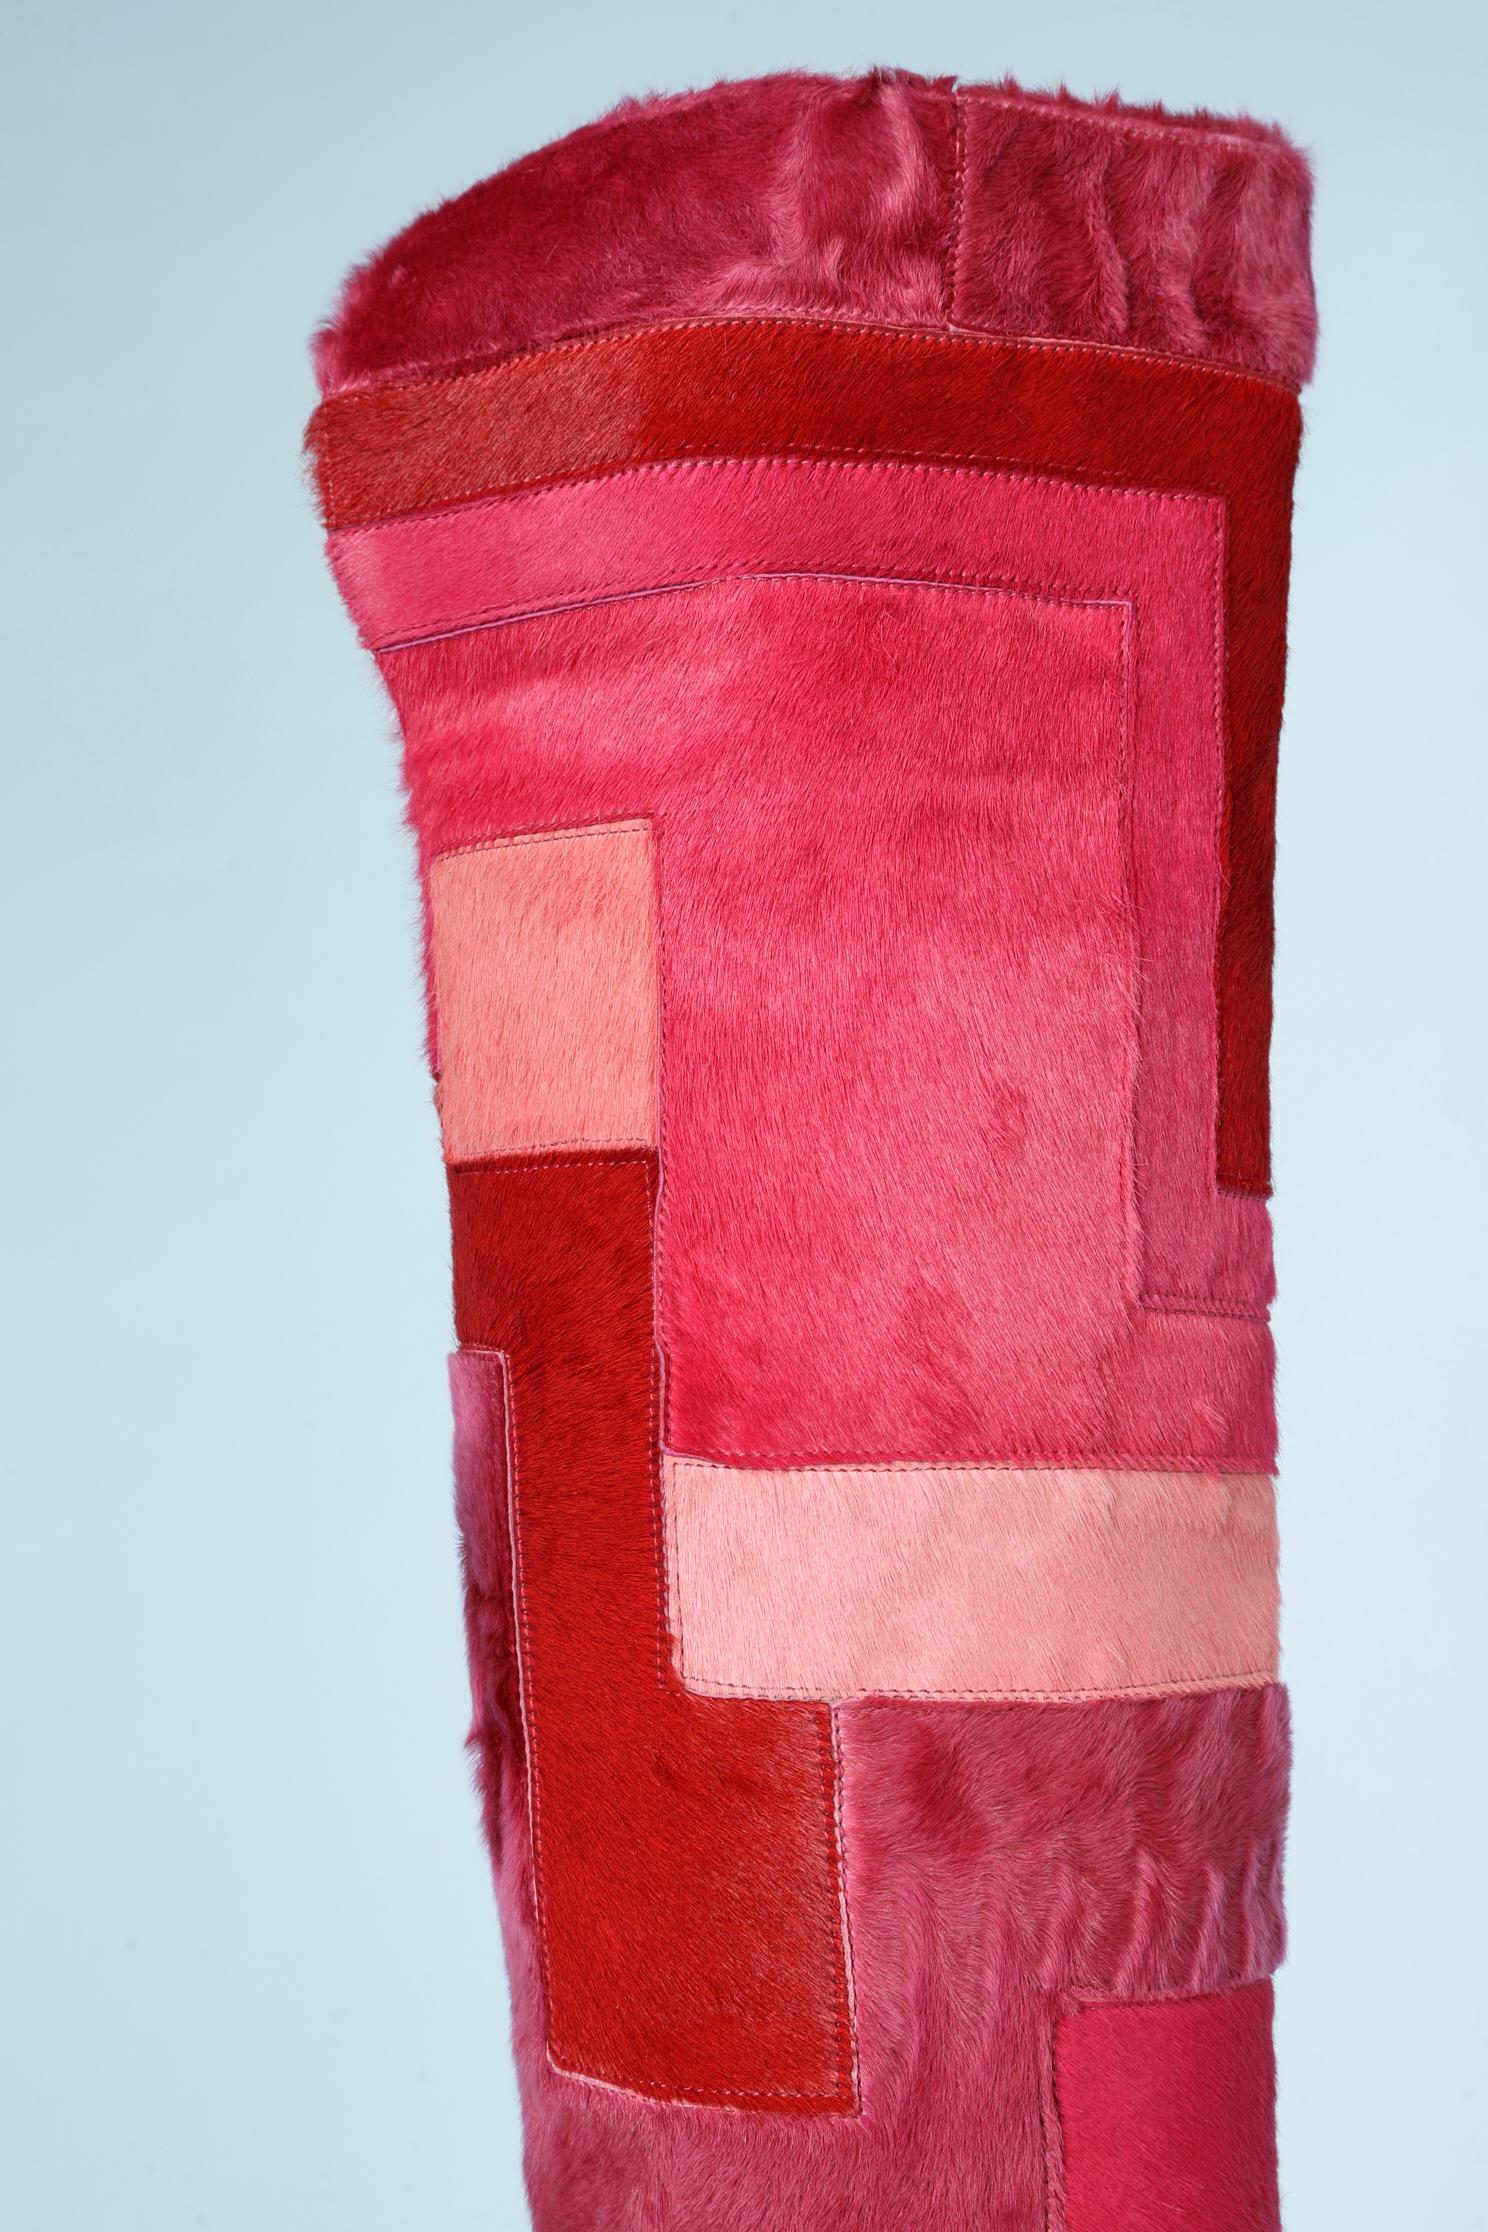 Cuissardes patchwork en fourrure dégradée rose (agneau et veau), doublure en cuir. 
 NOUVEAU
Taille des chaussures : 37 ( Italien )
Hauteur du talon = 11 cm
Talon laqué rouge. 